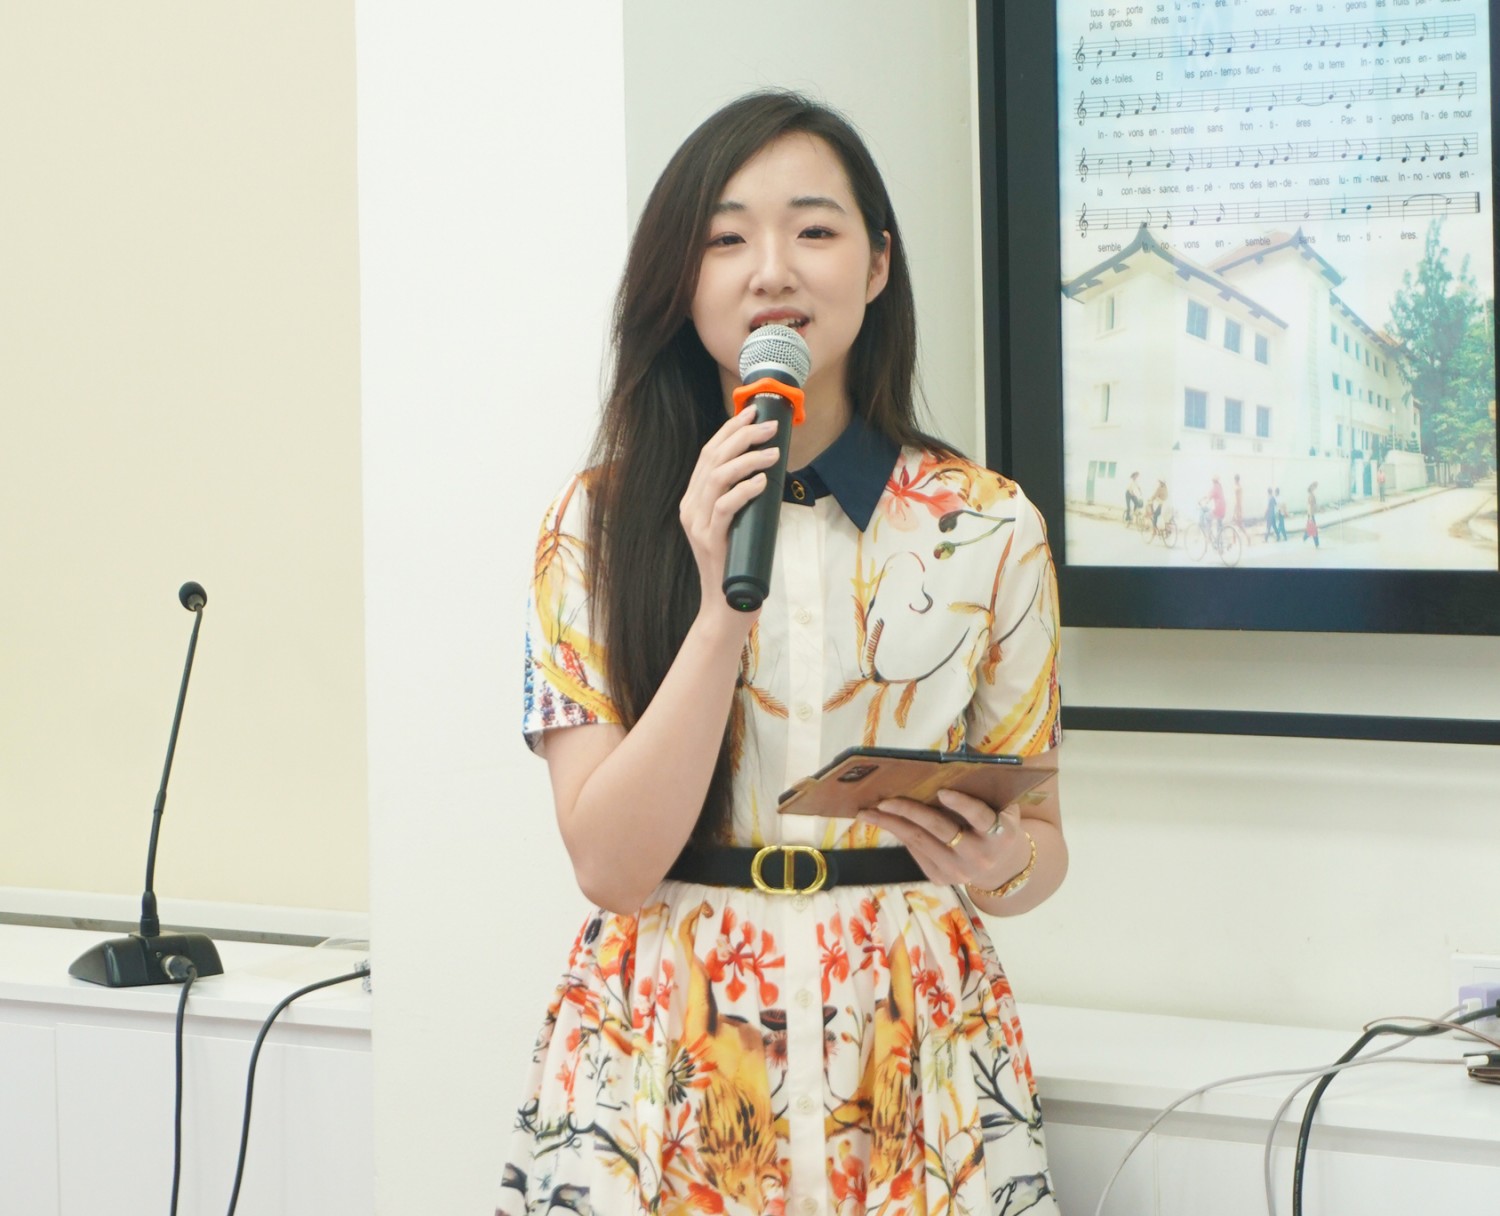 MC chương trình, chị Thuỳ Dương, học viên Khóa 3, chương trình Thạc sĩ Fintech tại IFI